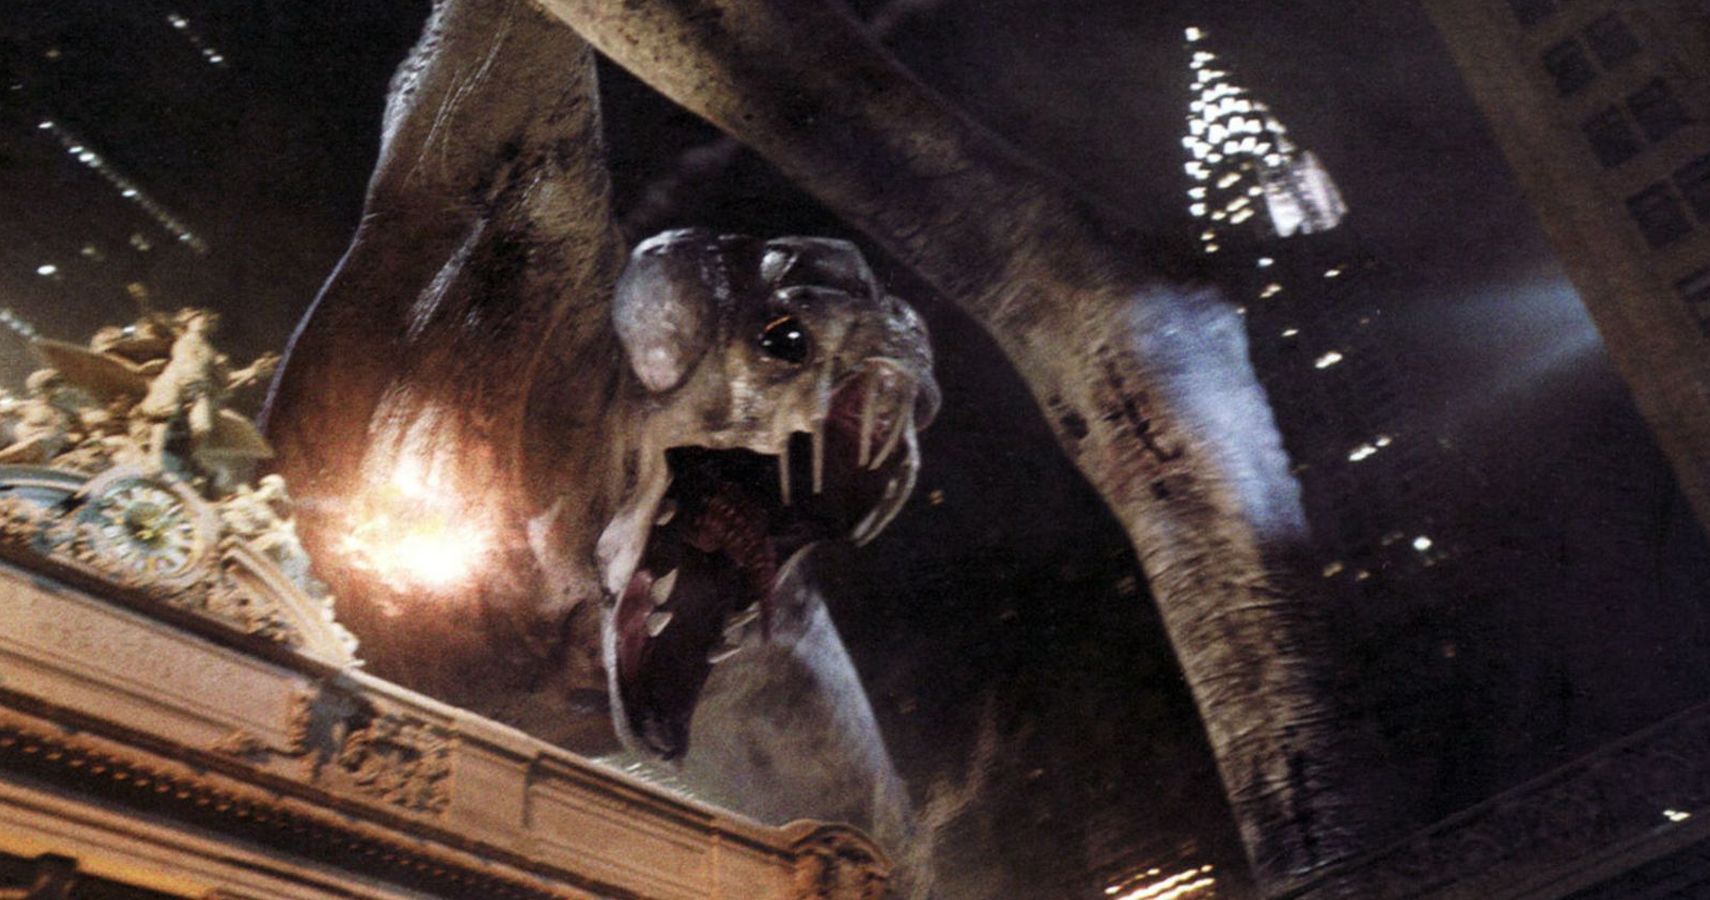 10 Deadliest Horror Movie Monsters Ranked